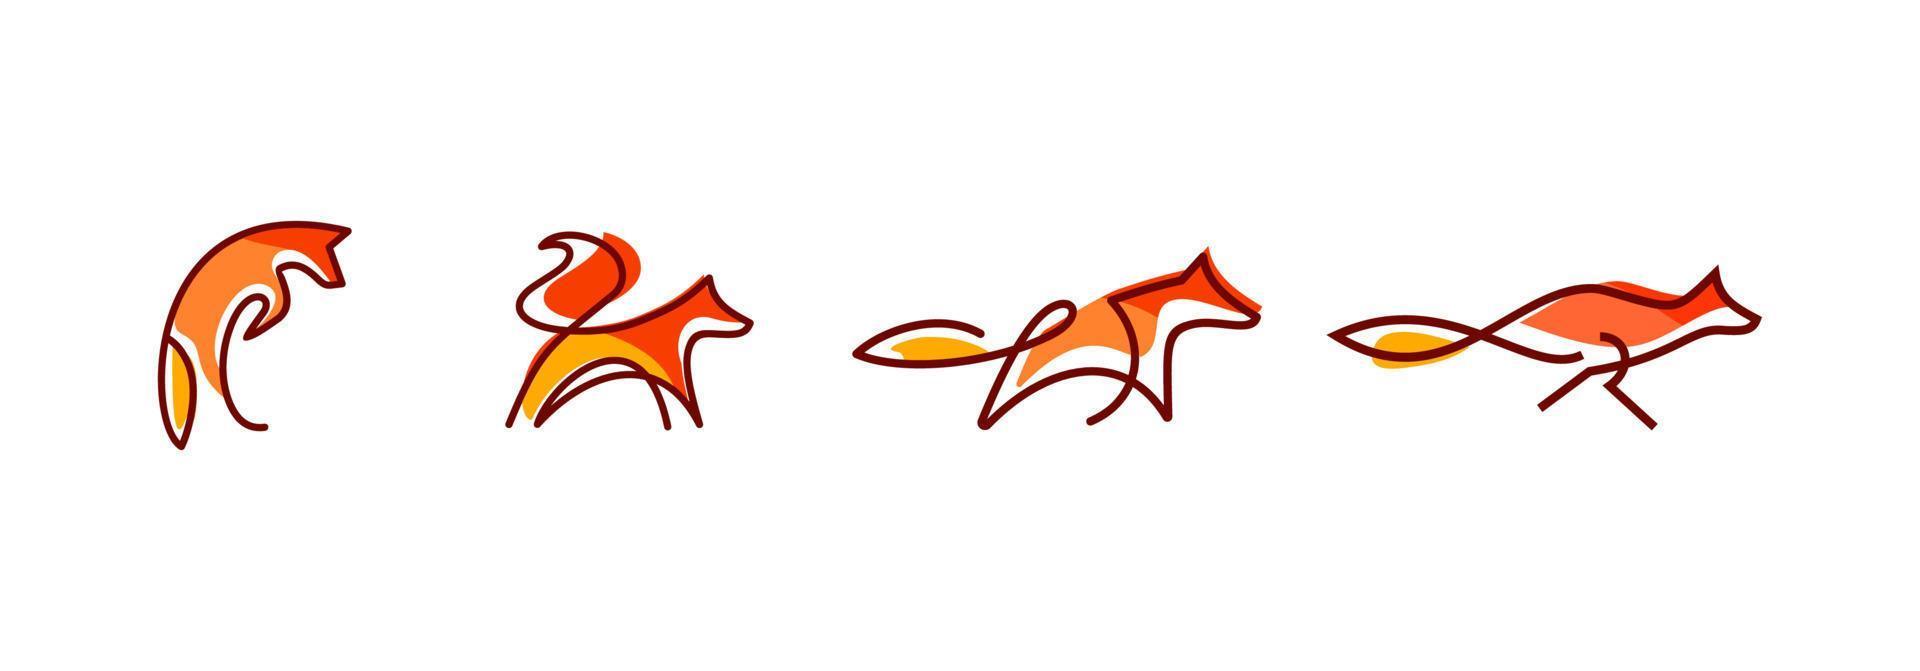 fuchswandkunstdesign, linienkunst des abstrakten orangefarbenen fuchsspringens und -laufens, minimale fuchslinienlogosatzsammlungsillustration lokalisiert auf weißem hintergrund vektor